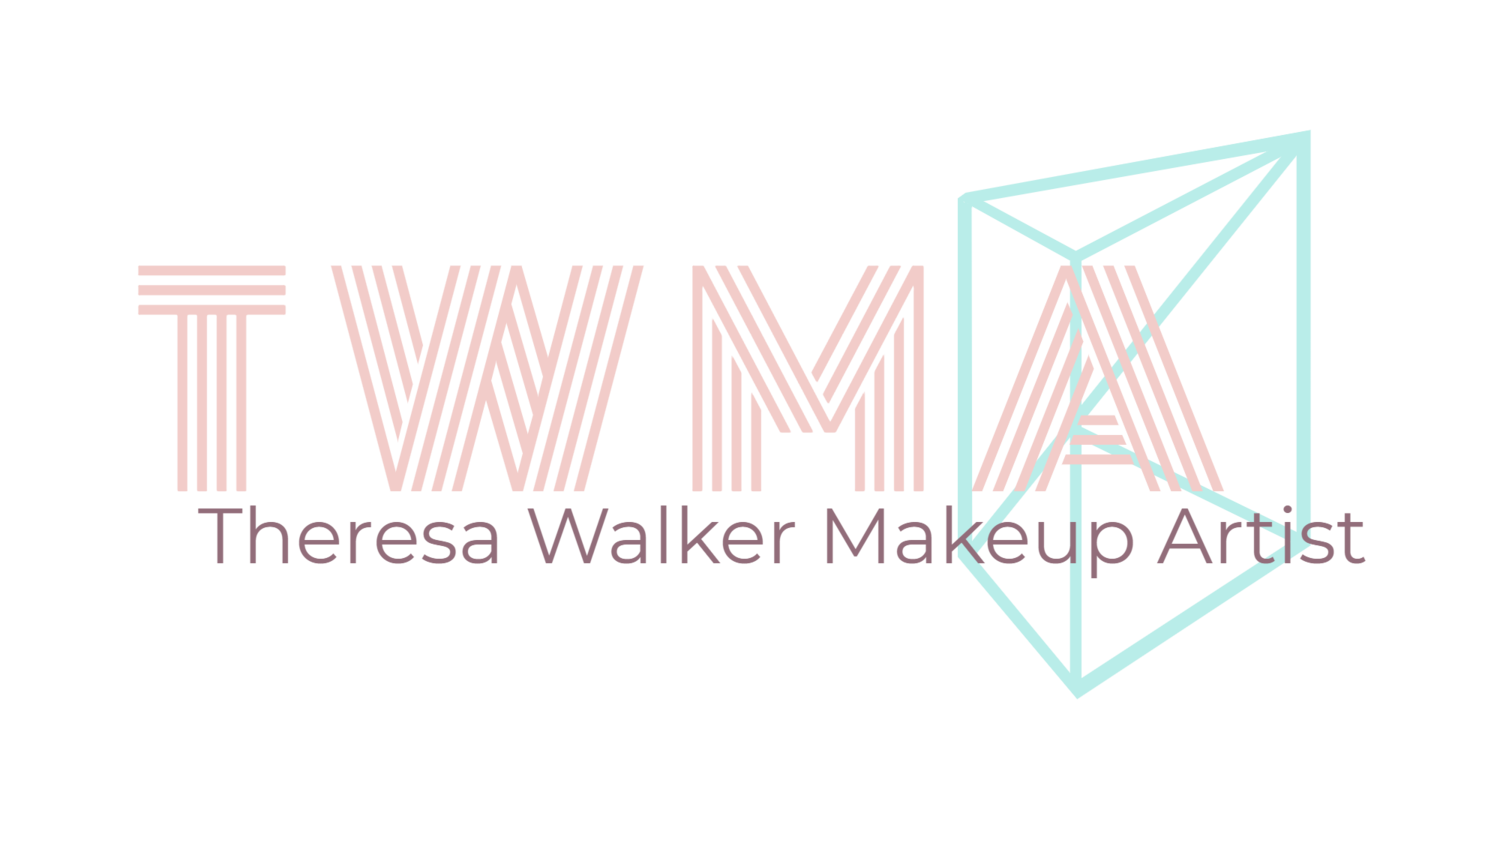 Theresa Walker Makeup Artist